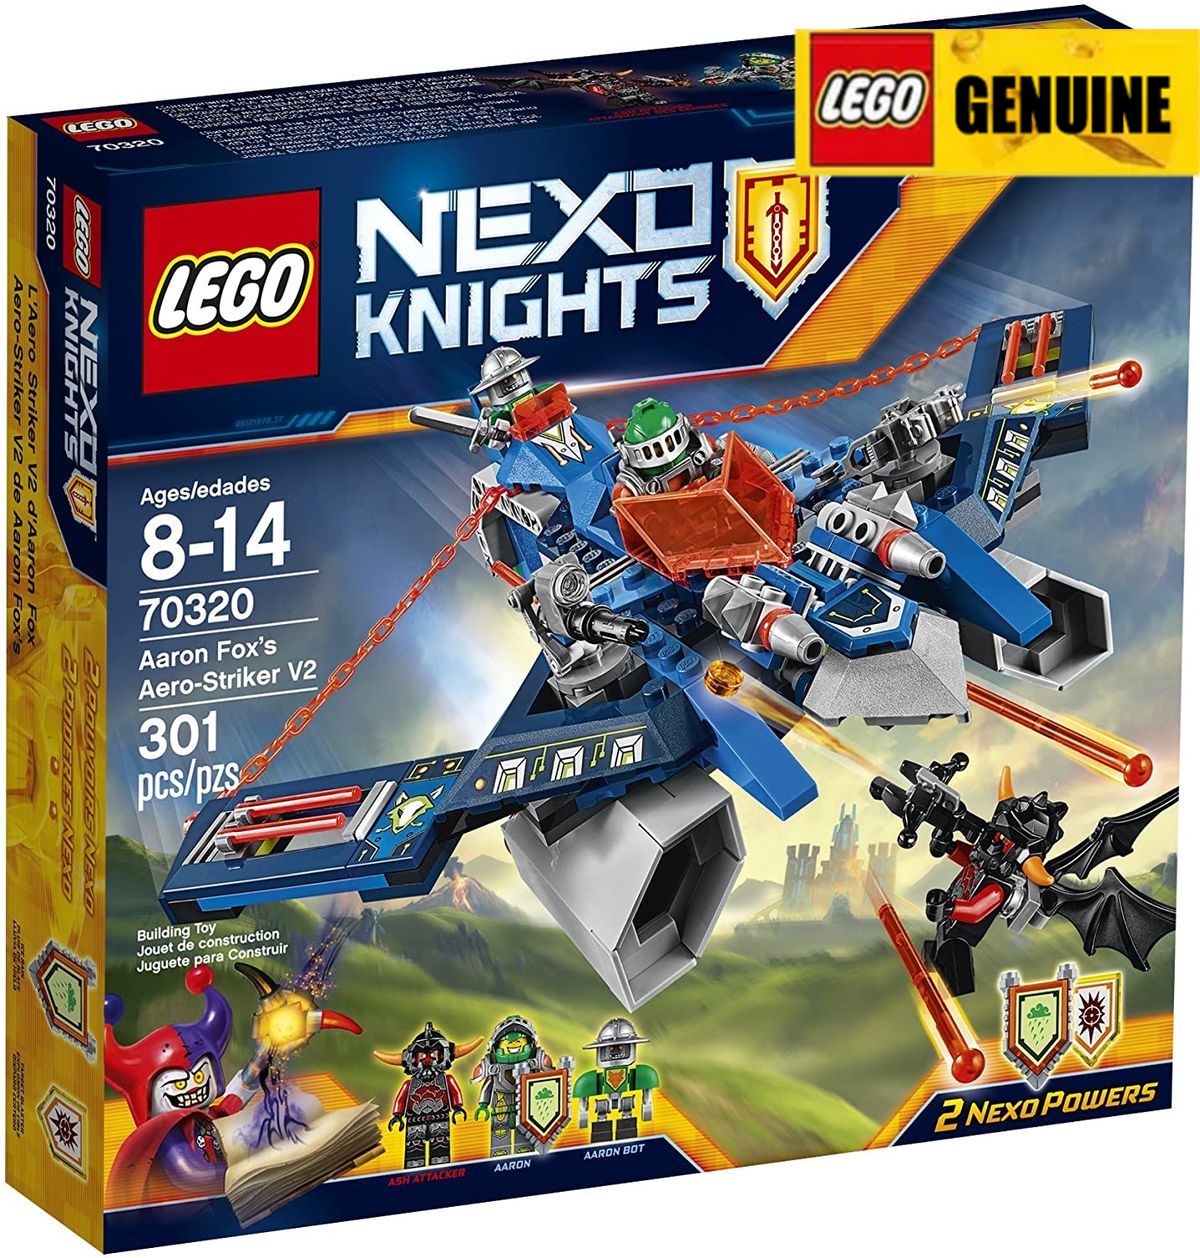 【Genuine】LEGO Bộ xếp hình Lego Nexo Knights 70320 Aaron Fox's Aero-Striker V2 Building Block (301 miếng) Đảm bảo chính hãng, từ Đan Mạch